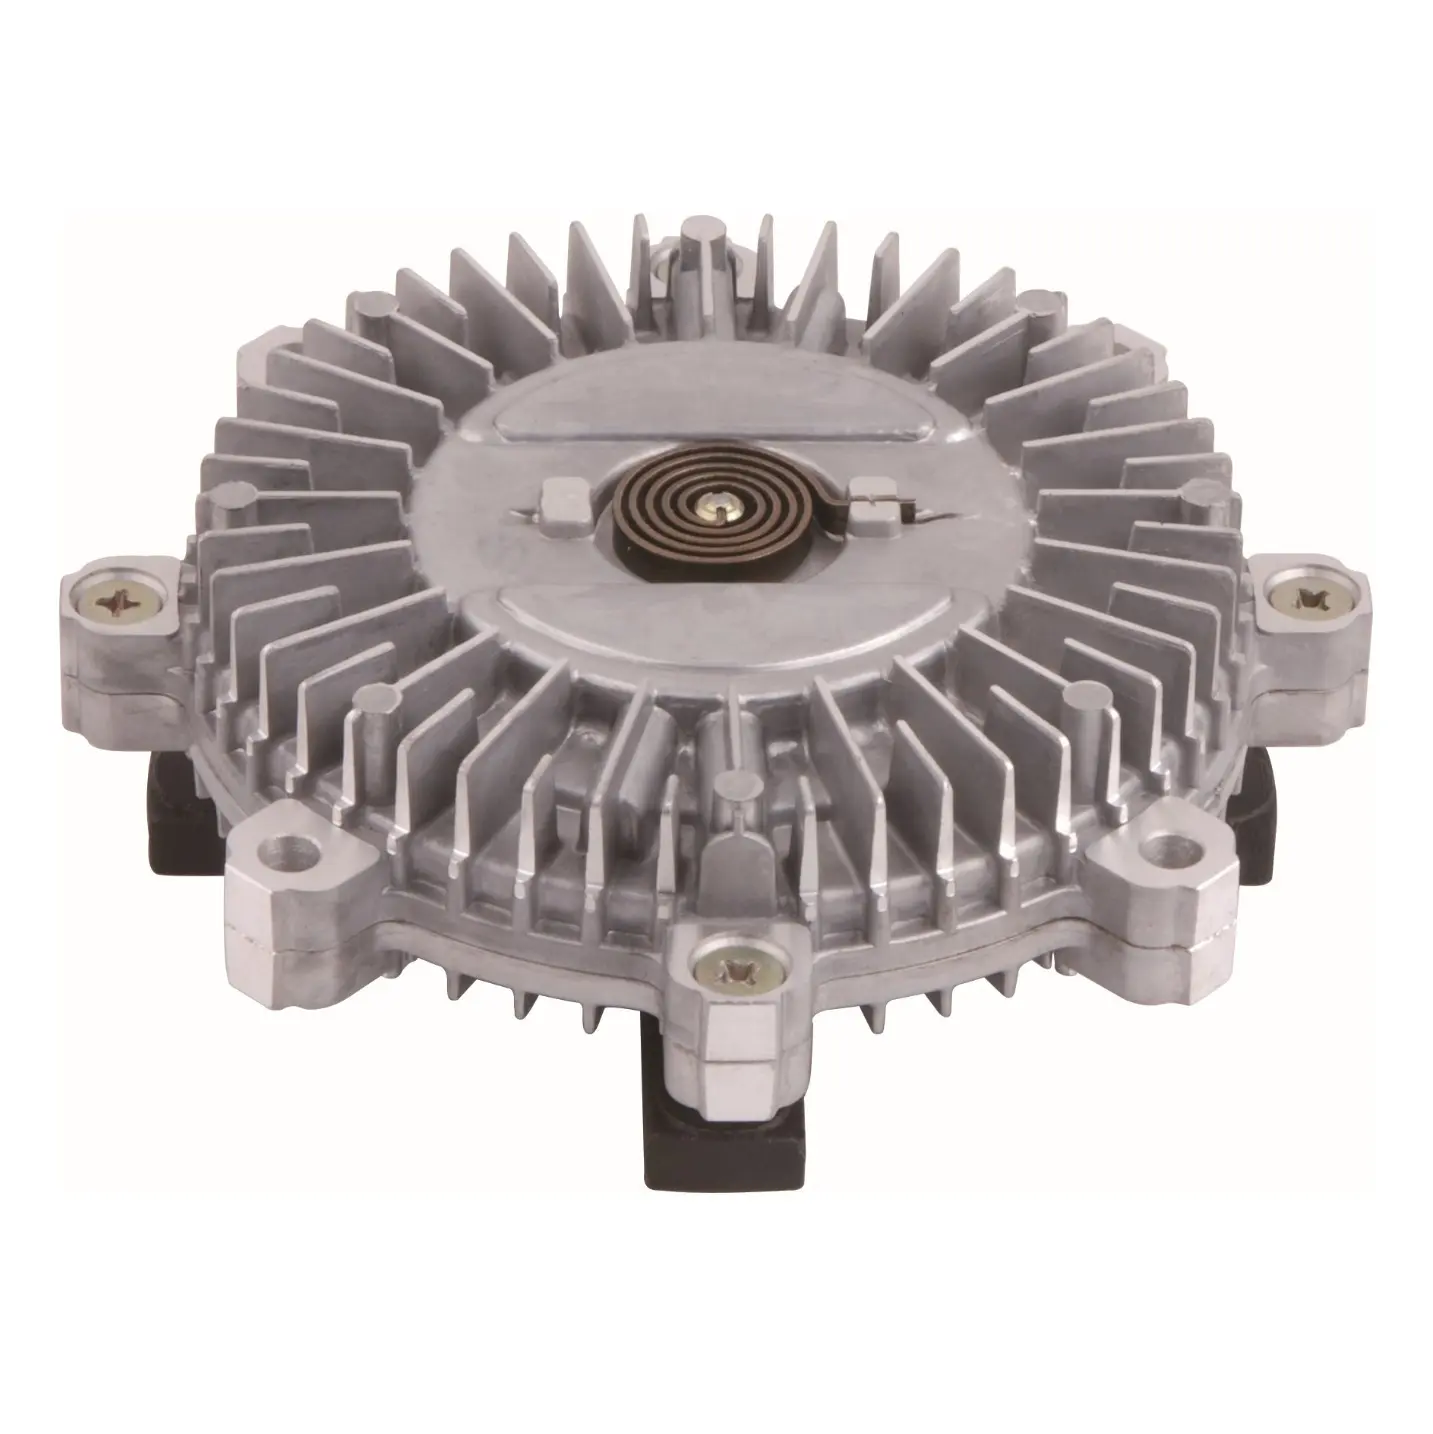 Me-013416 embreagem do ventilador de refrigeração do motor para mitsubishi canter fuso 4d34 me-013415